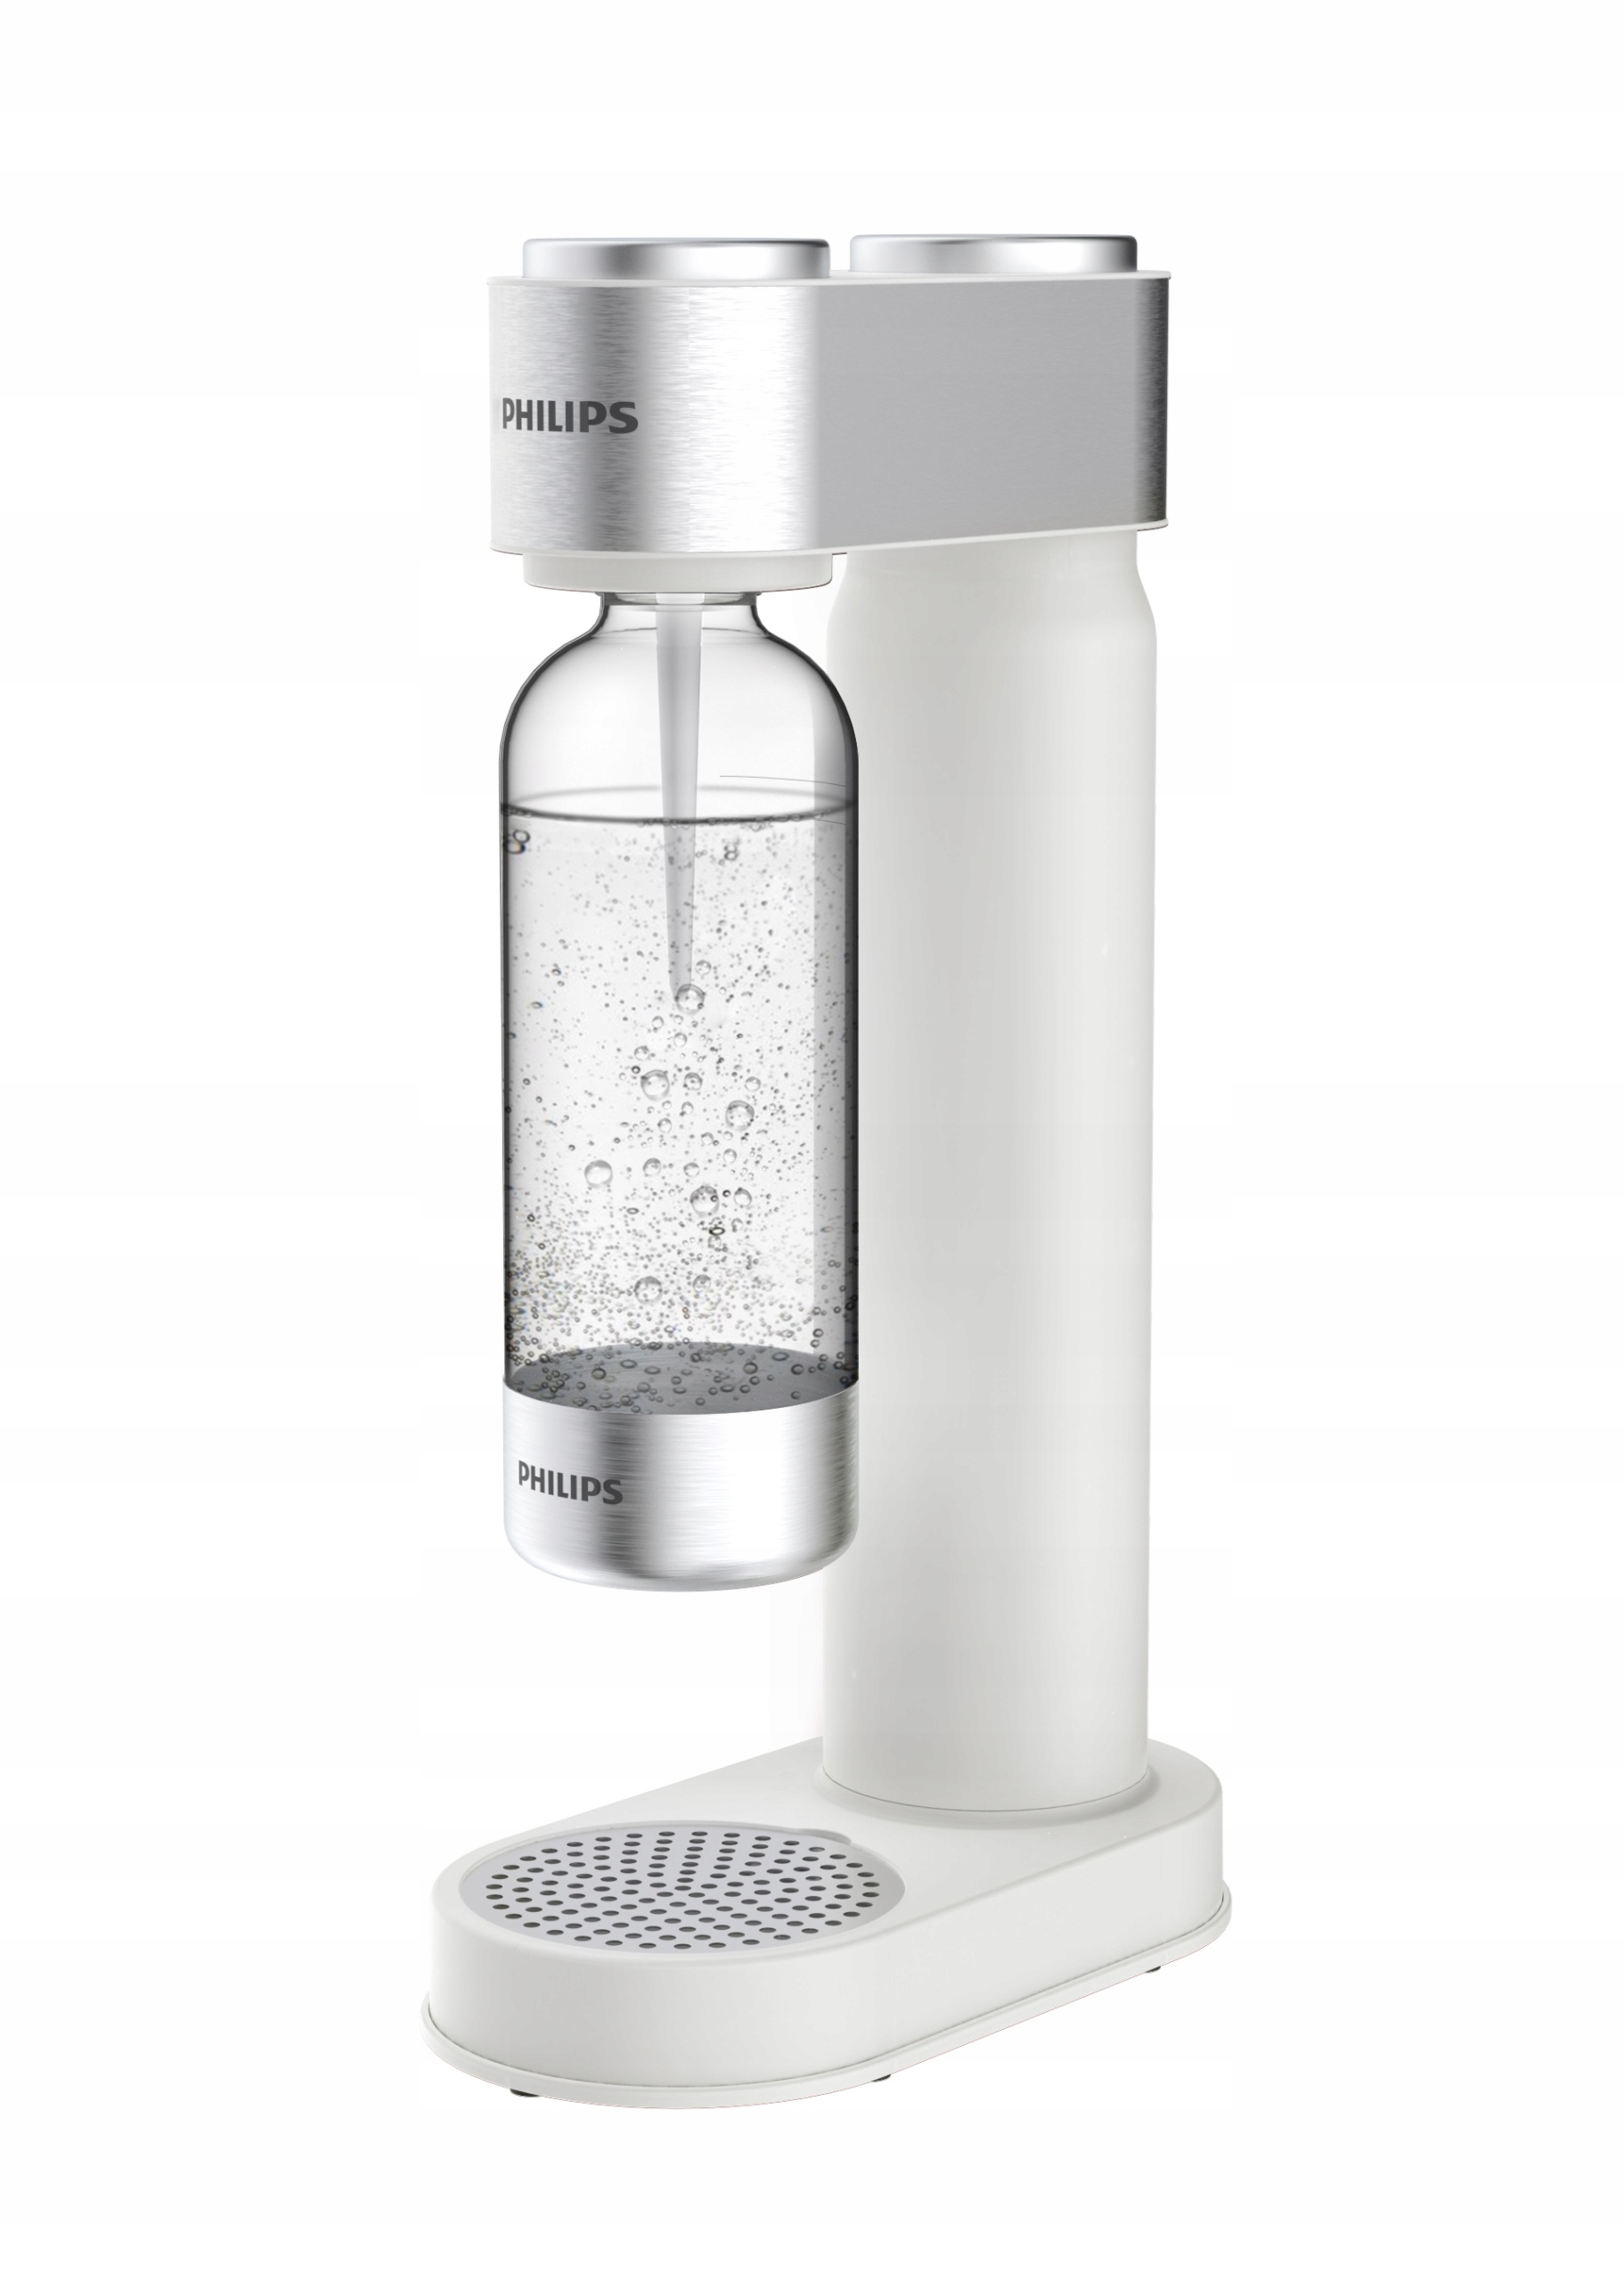 Vandens karbonizavimo prietaisas - rinkinys Philips baltas Gamintojo kodas ADD4902WH/10